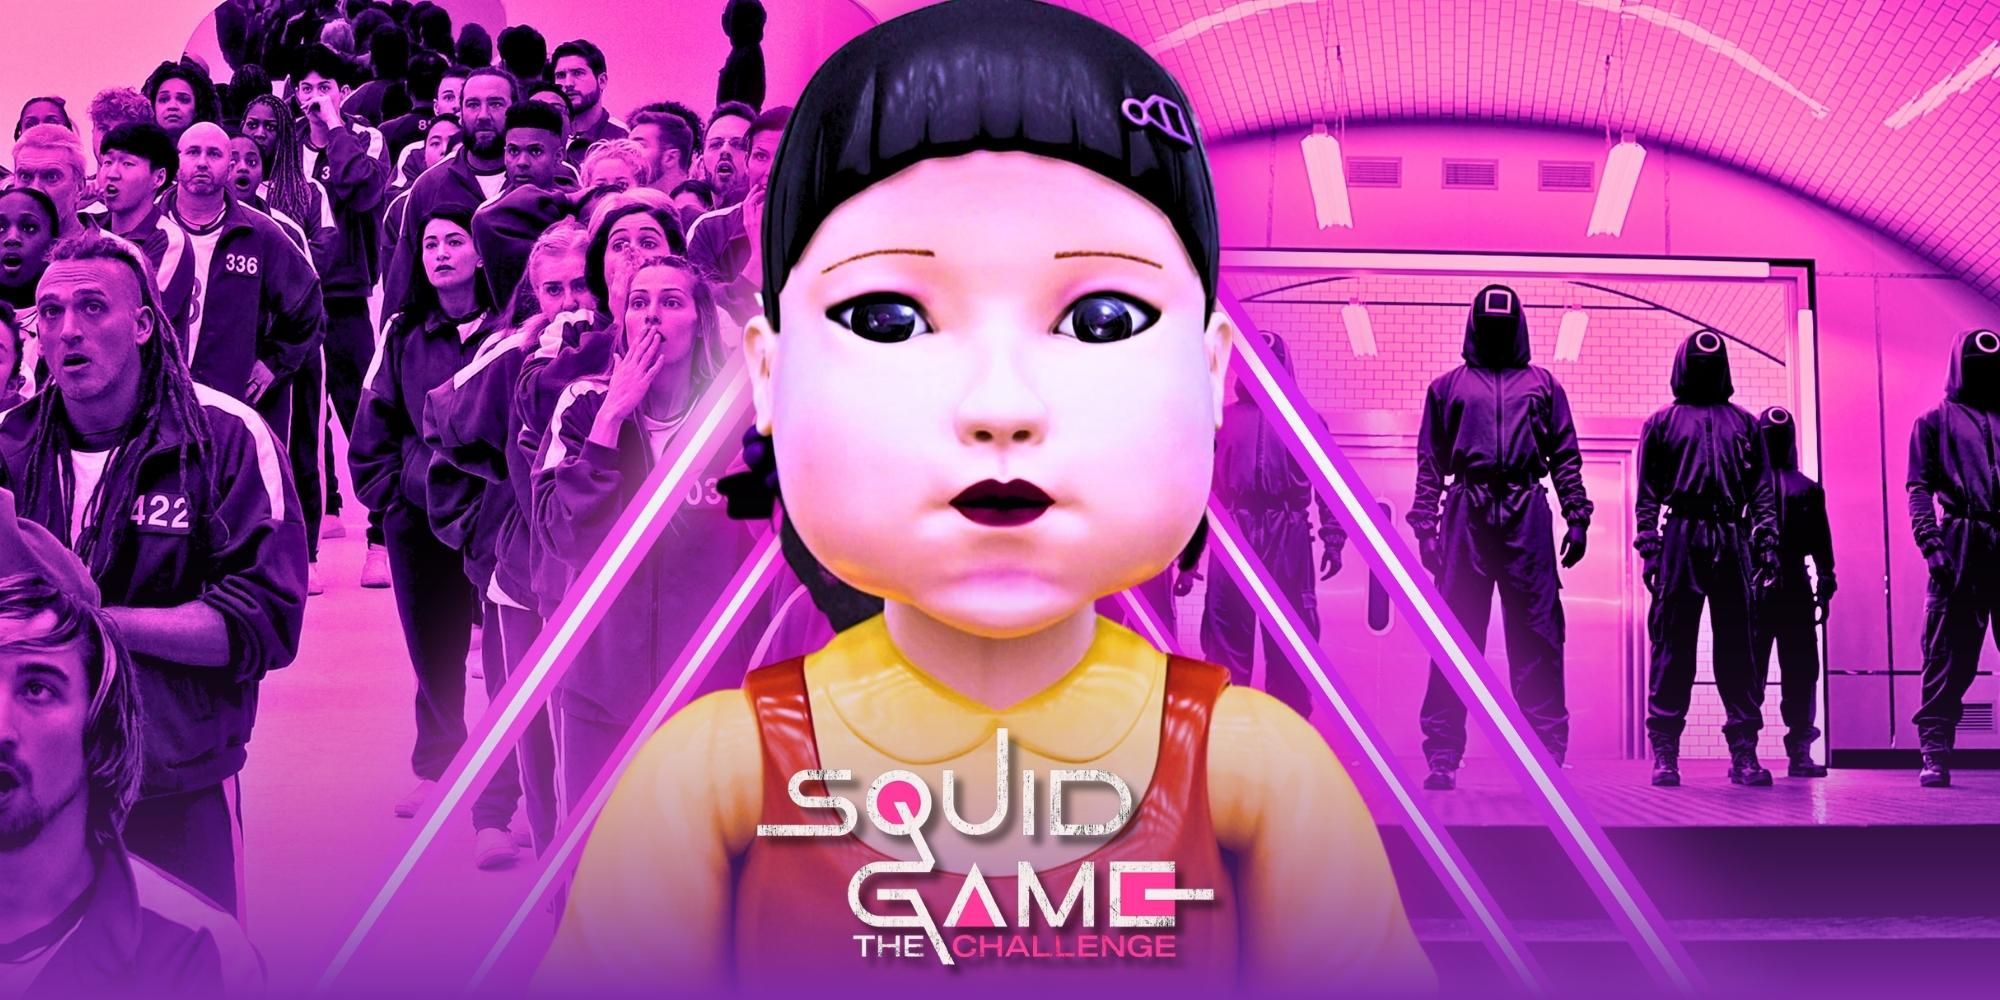 Squid Game: The Challenge Los juegos finales de la temporada 1 fueron anticlimáticos, según los fanáticos (SPOILERS)